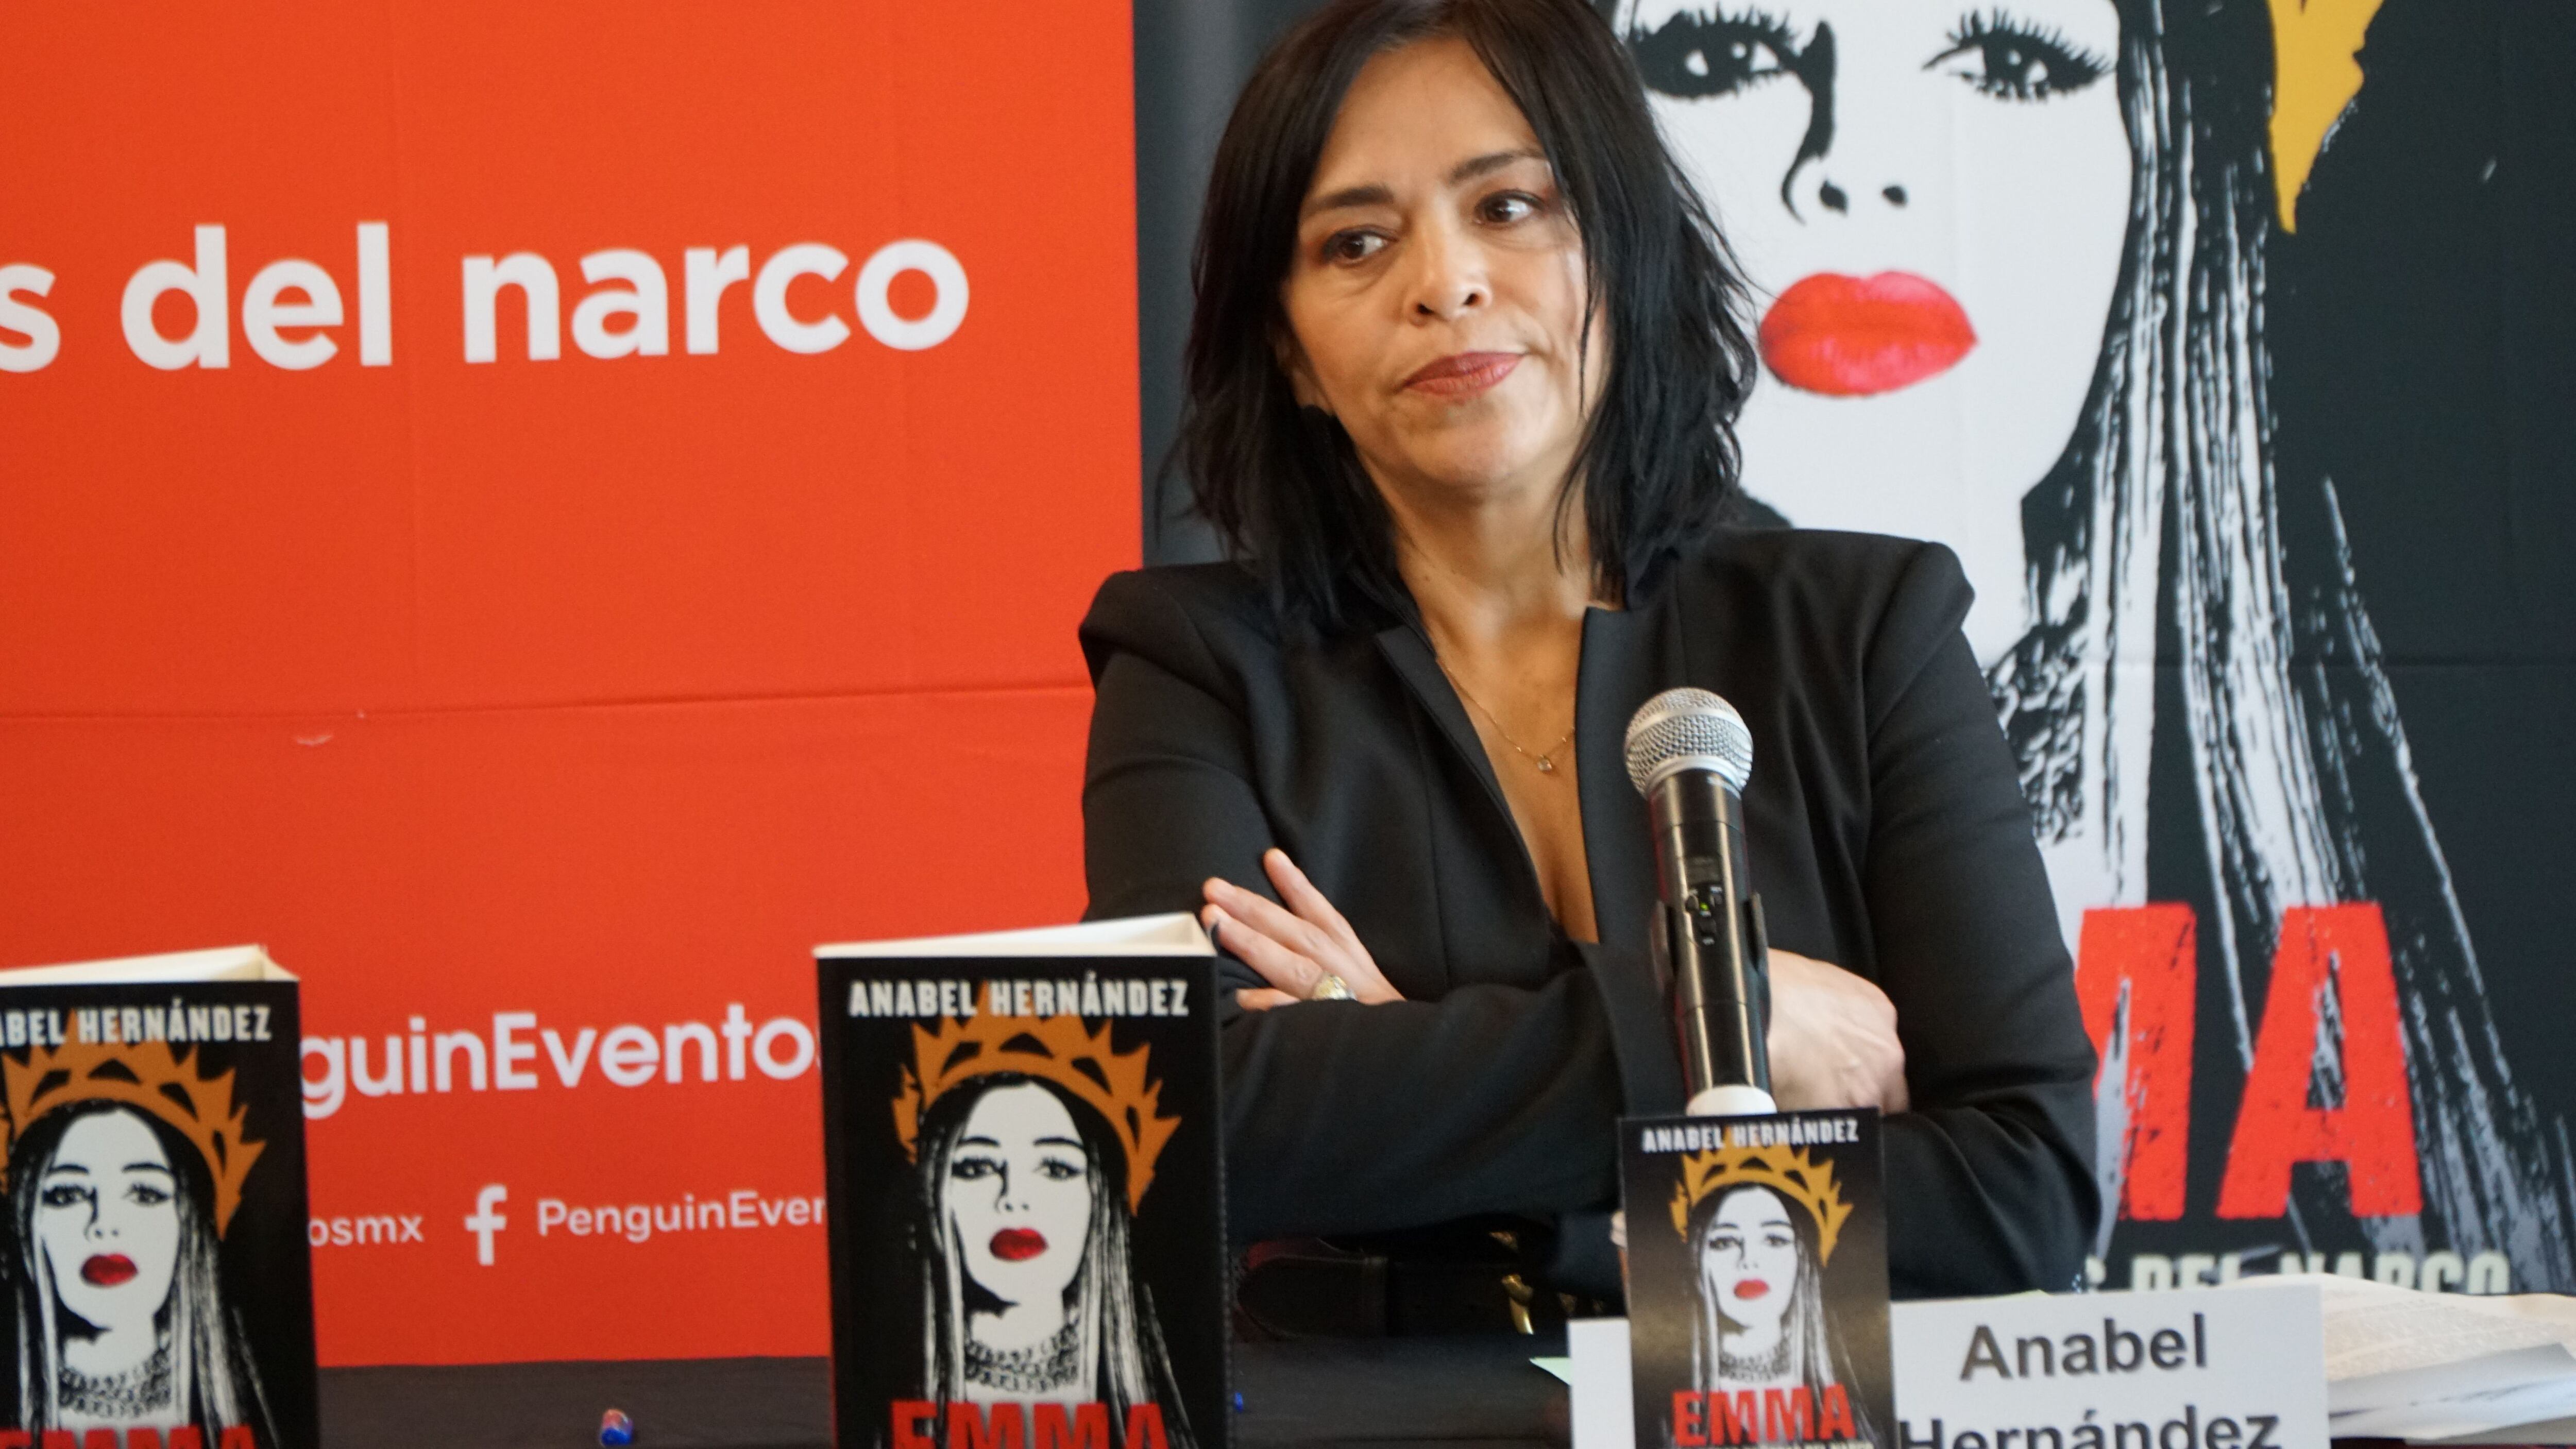 Anabel Hernández en conferencia de prensa